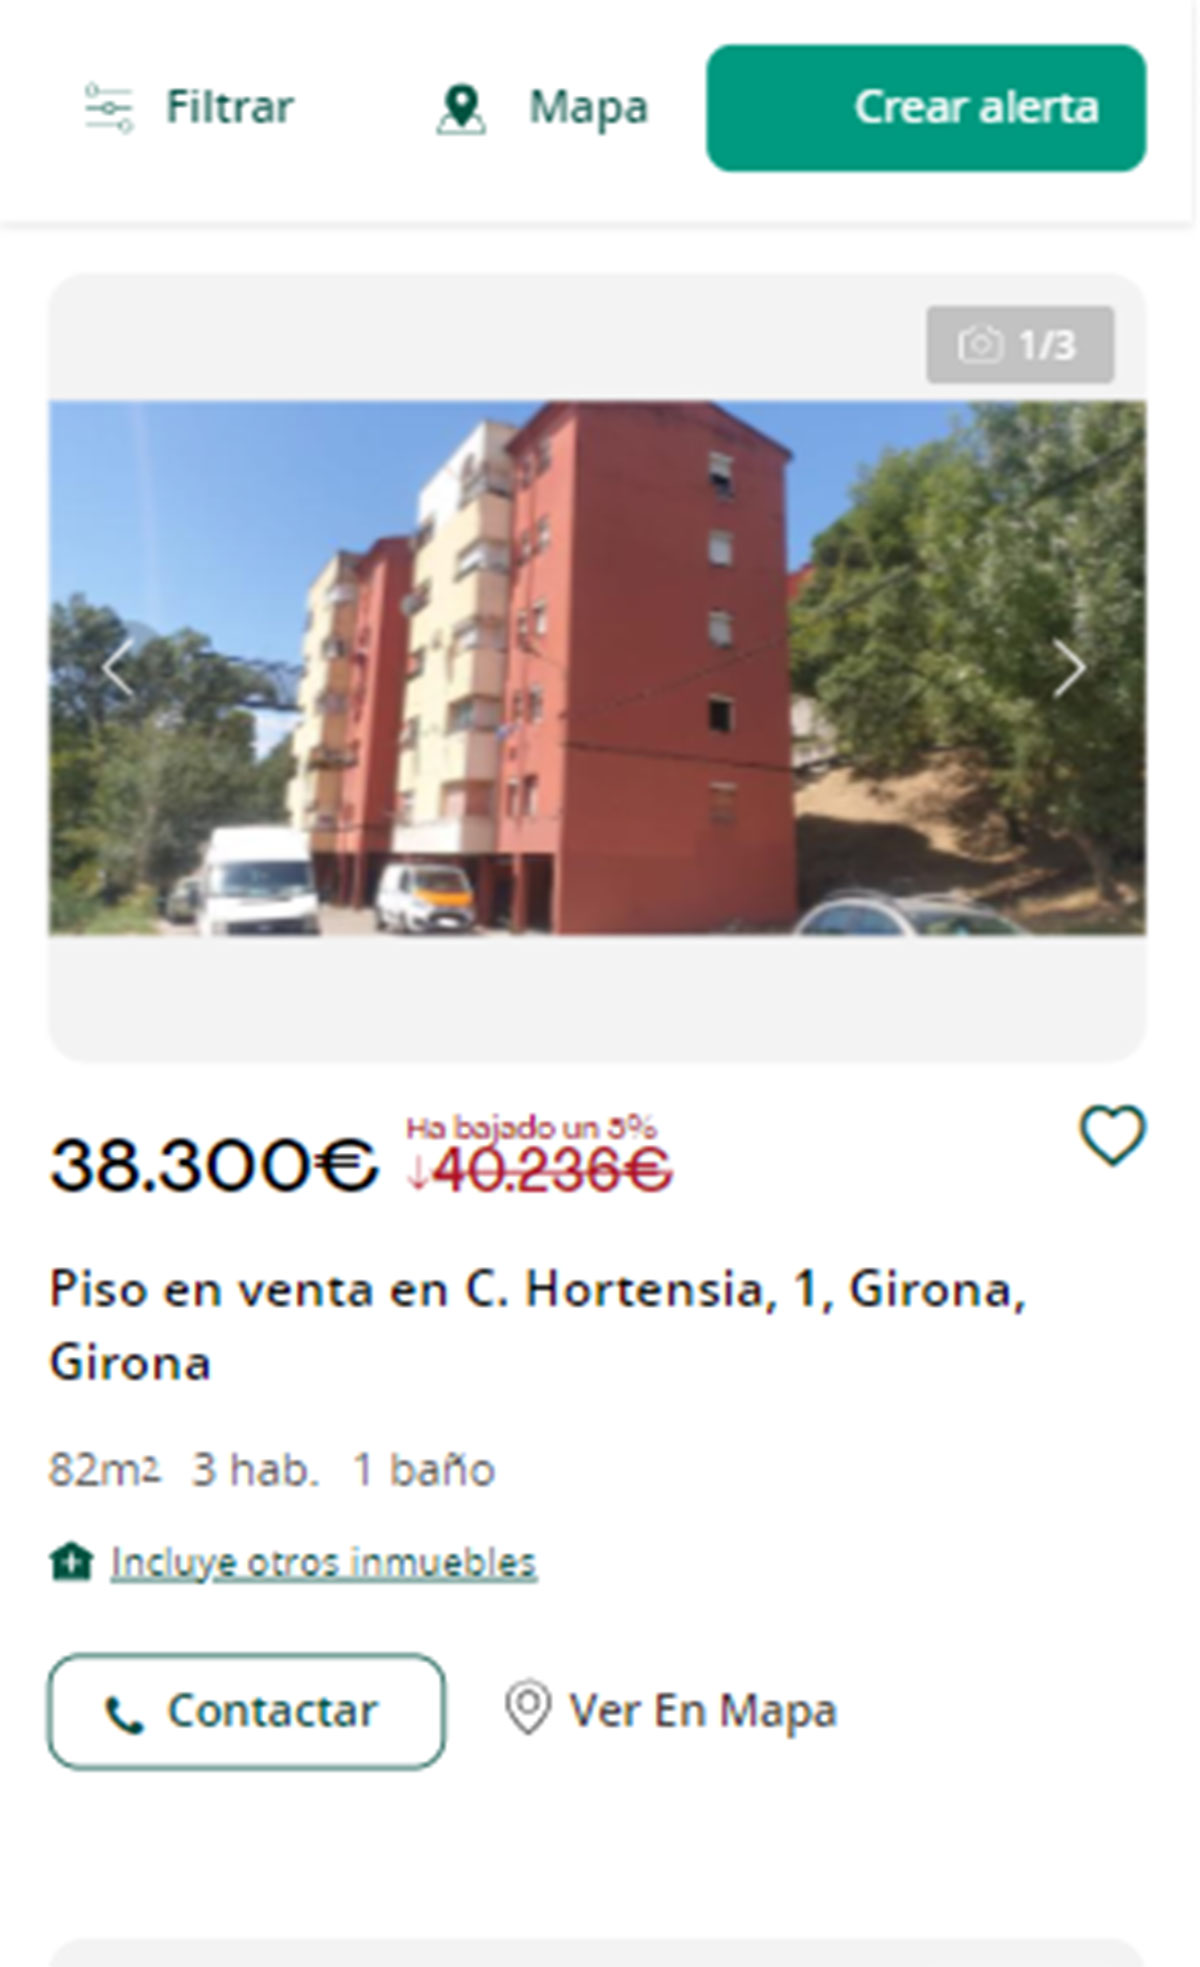 Piso en Girona por 38.000 euros